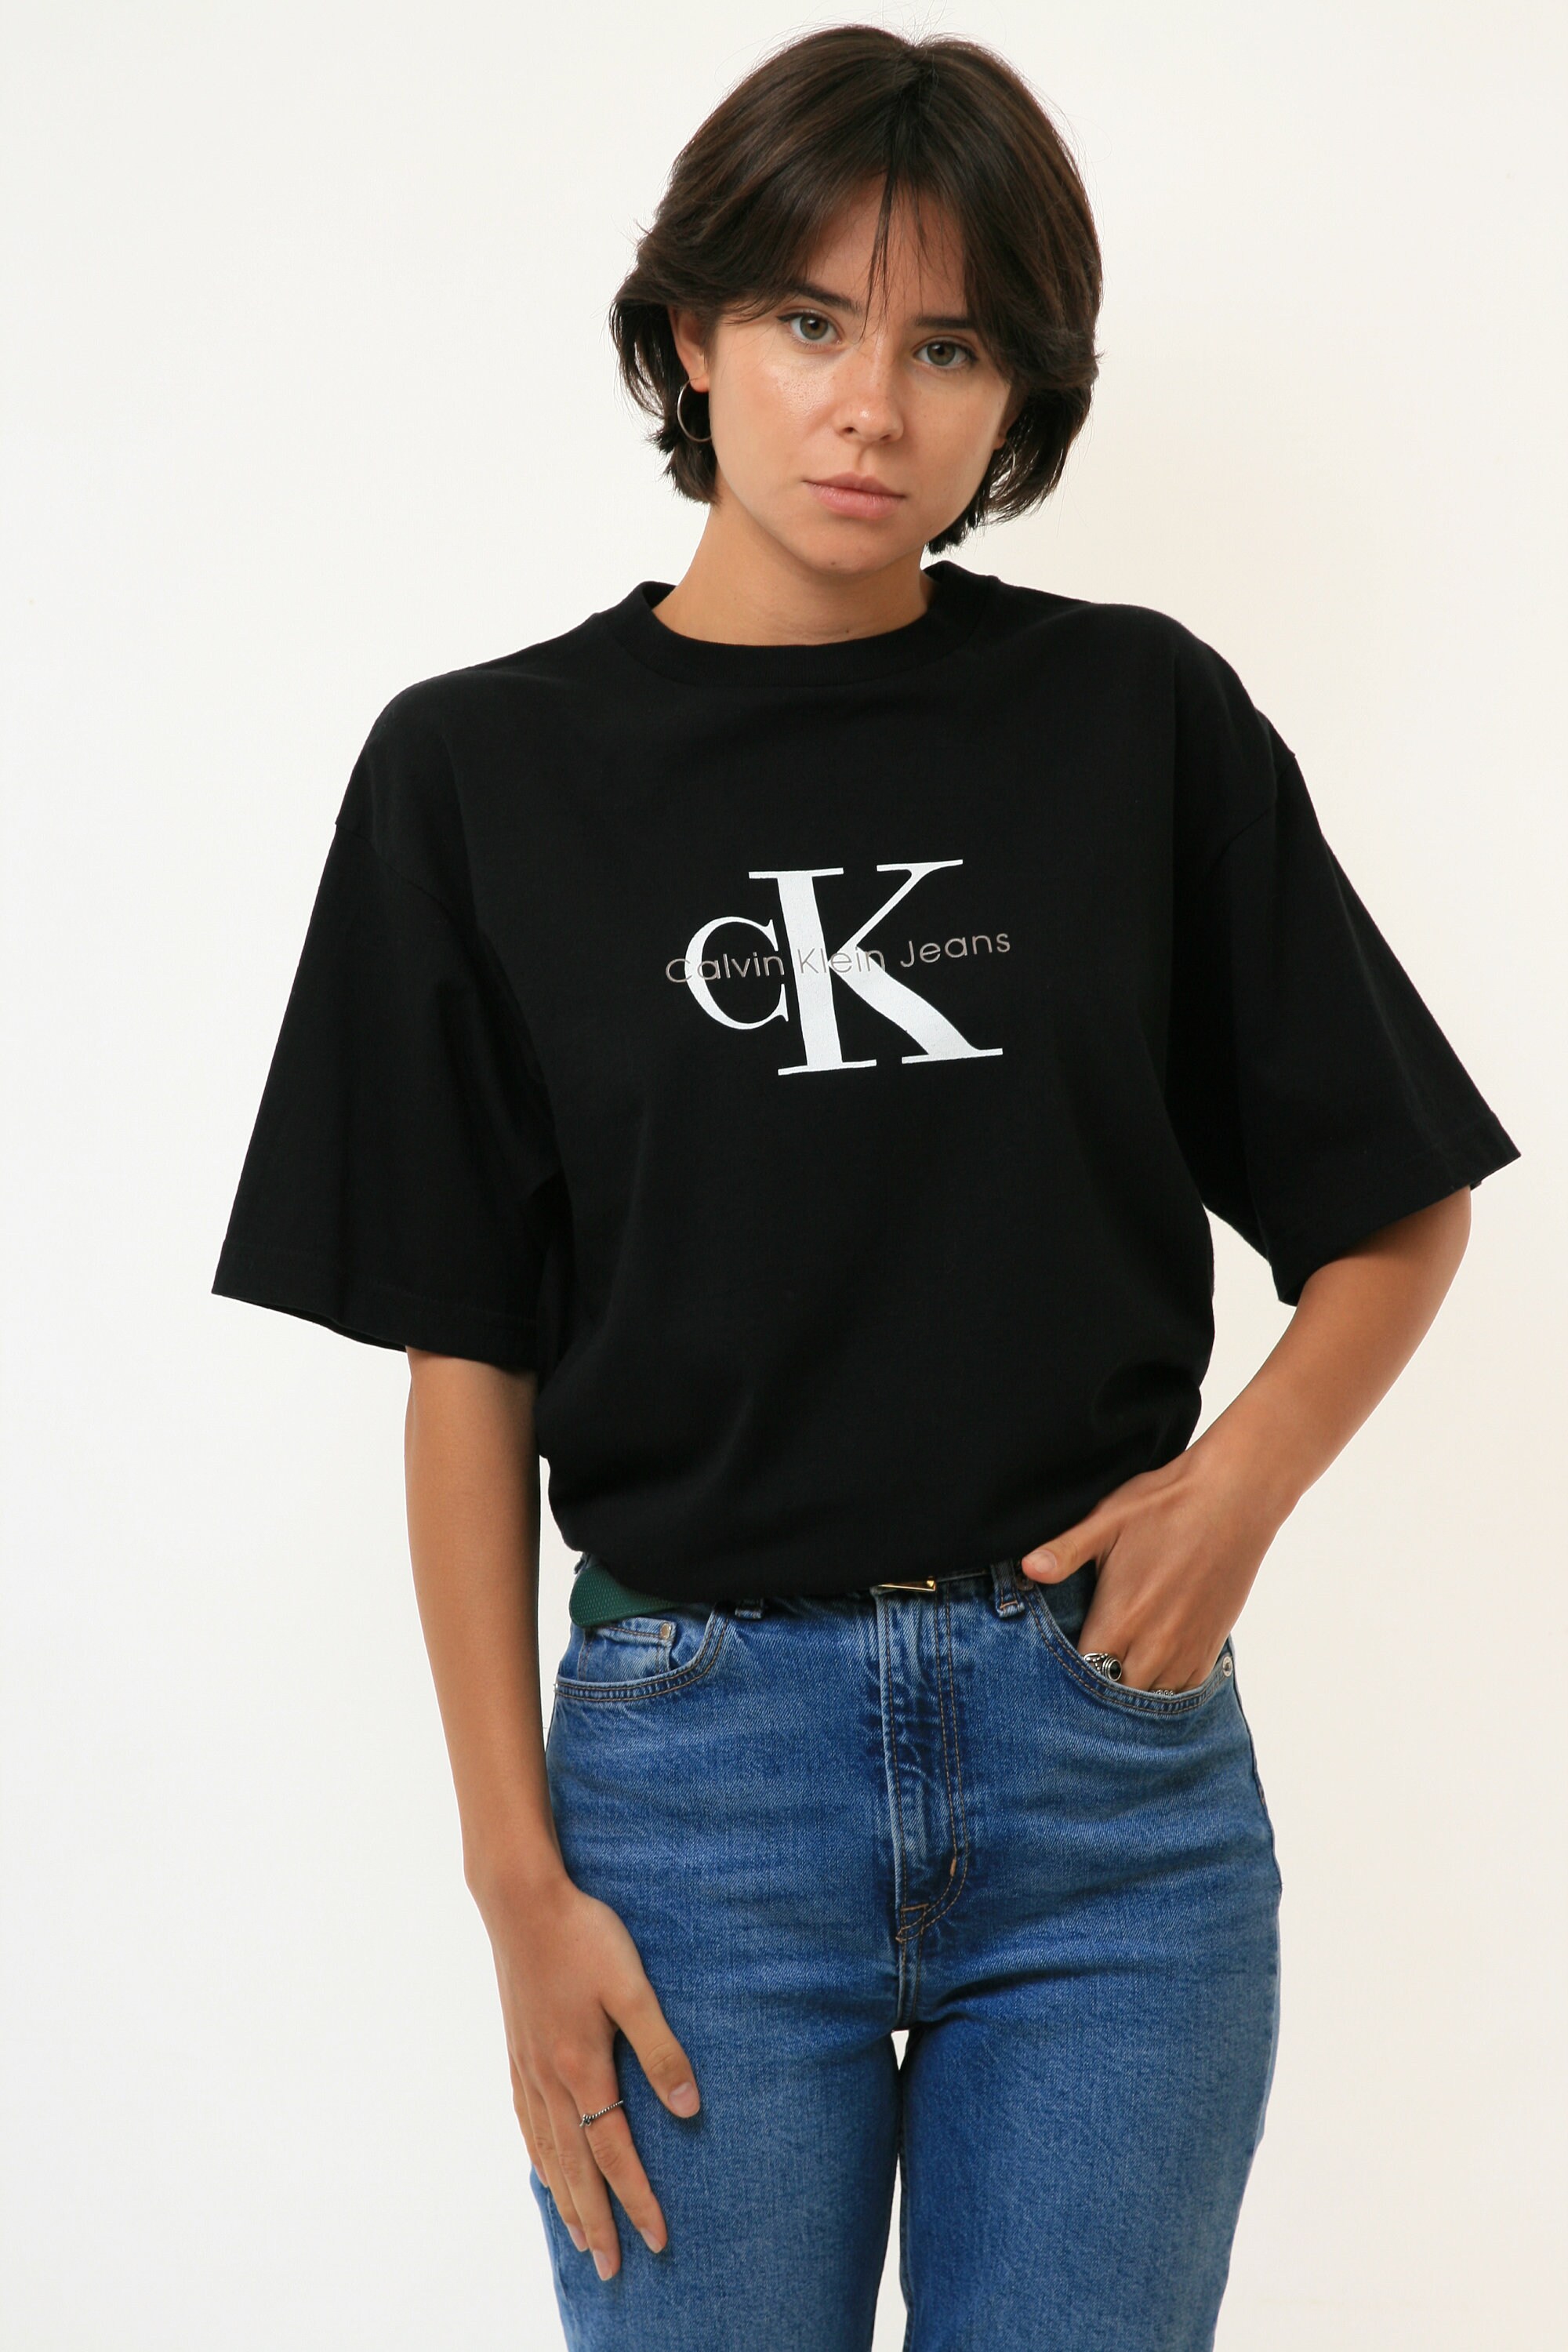 Vintage Calvin Klein T-shirt White Beige Black Men Women Shirt